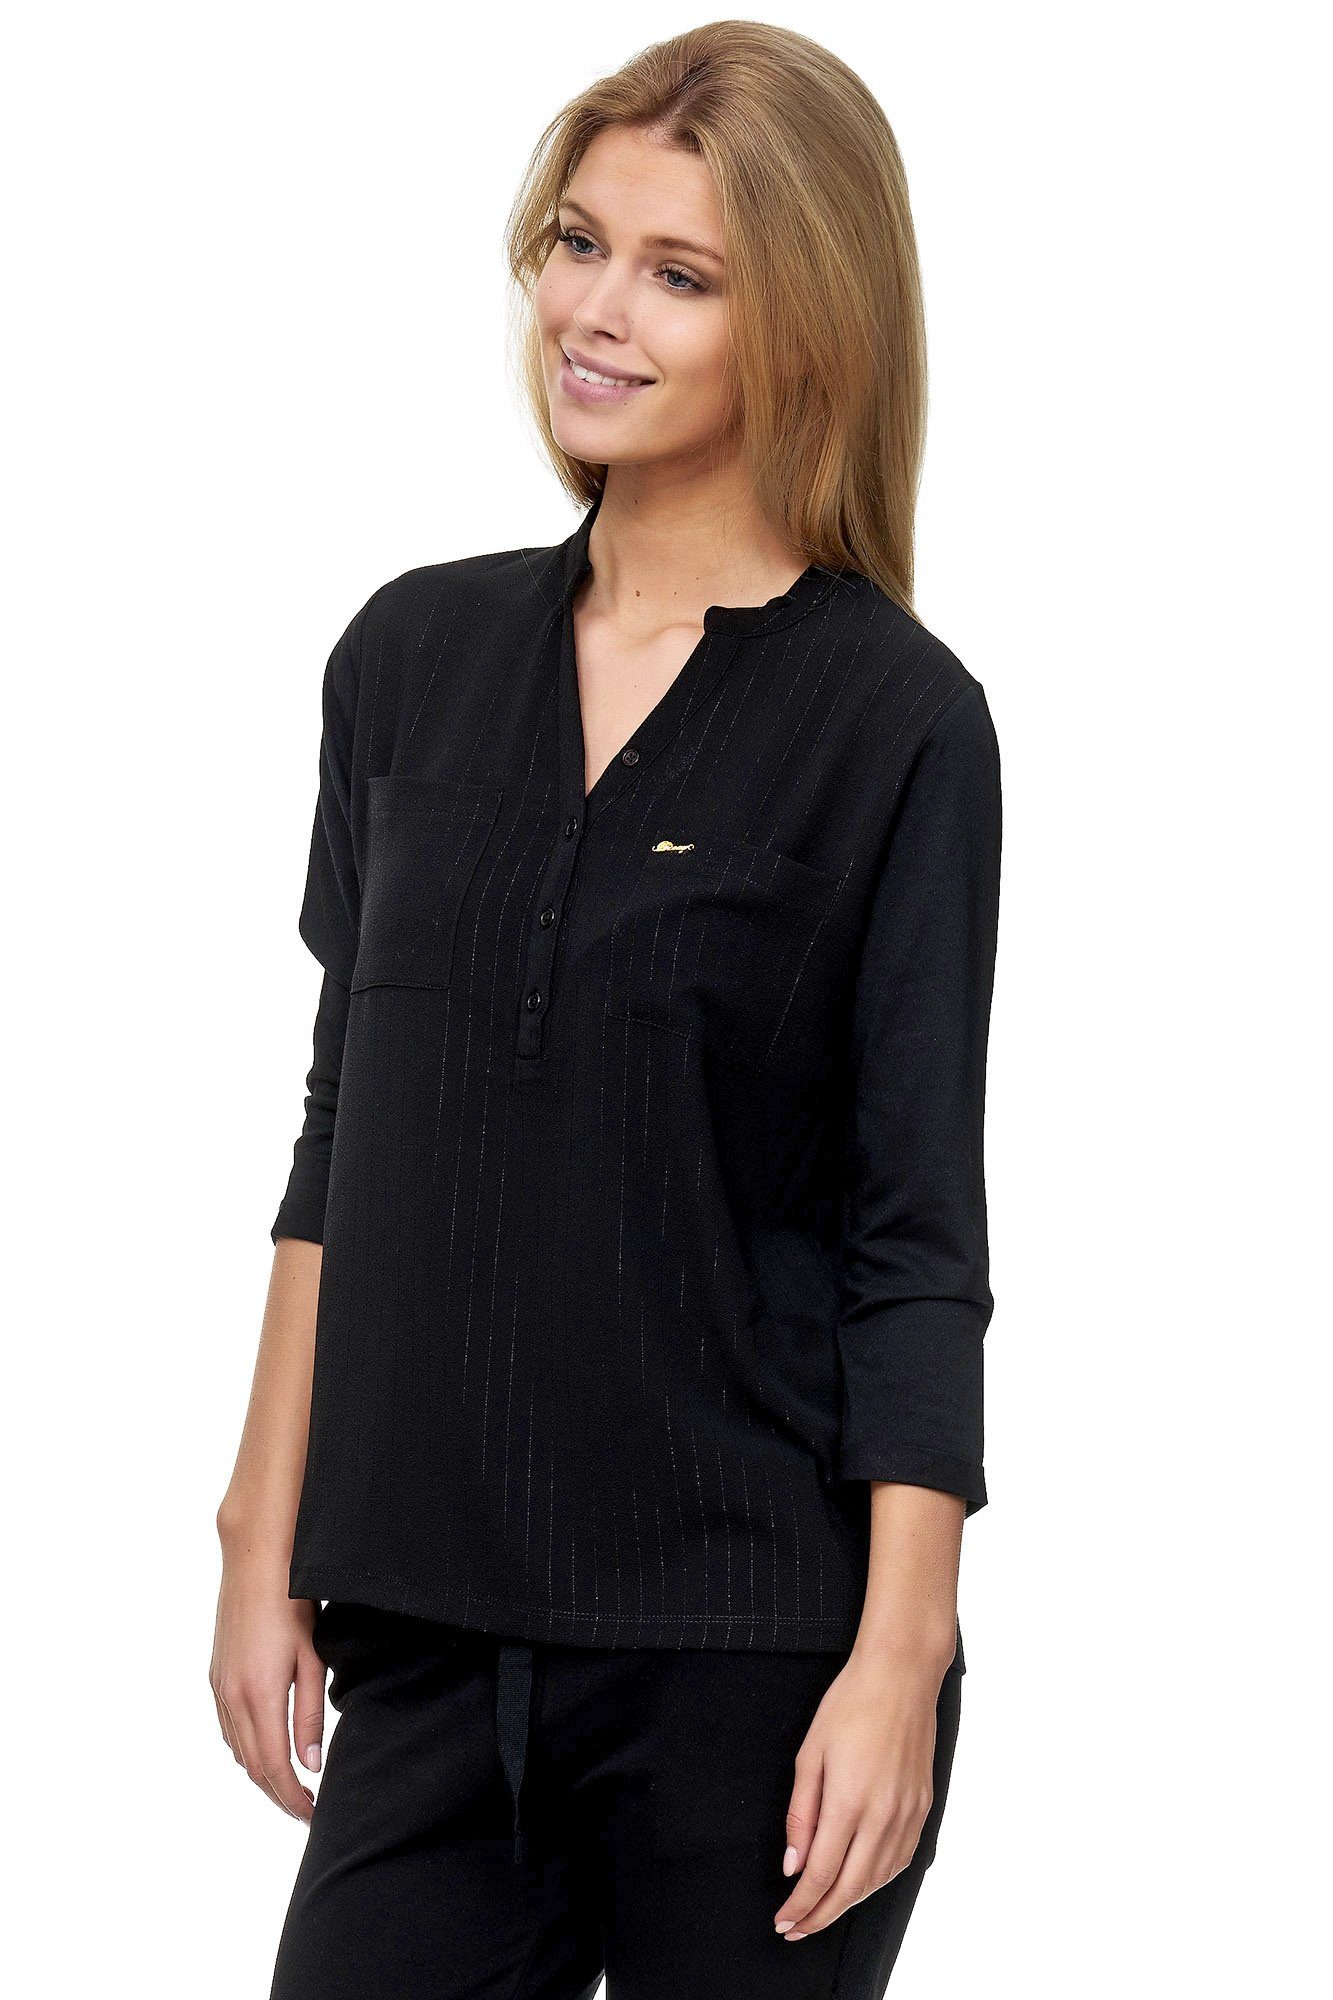 Decay Klassische Bluse mit V-Ausschnitt modischem schwarz